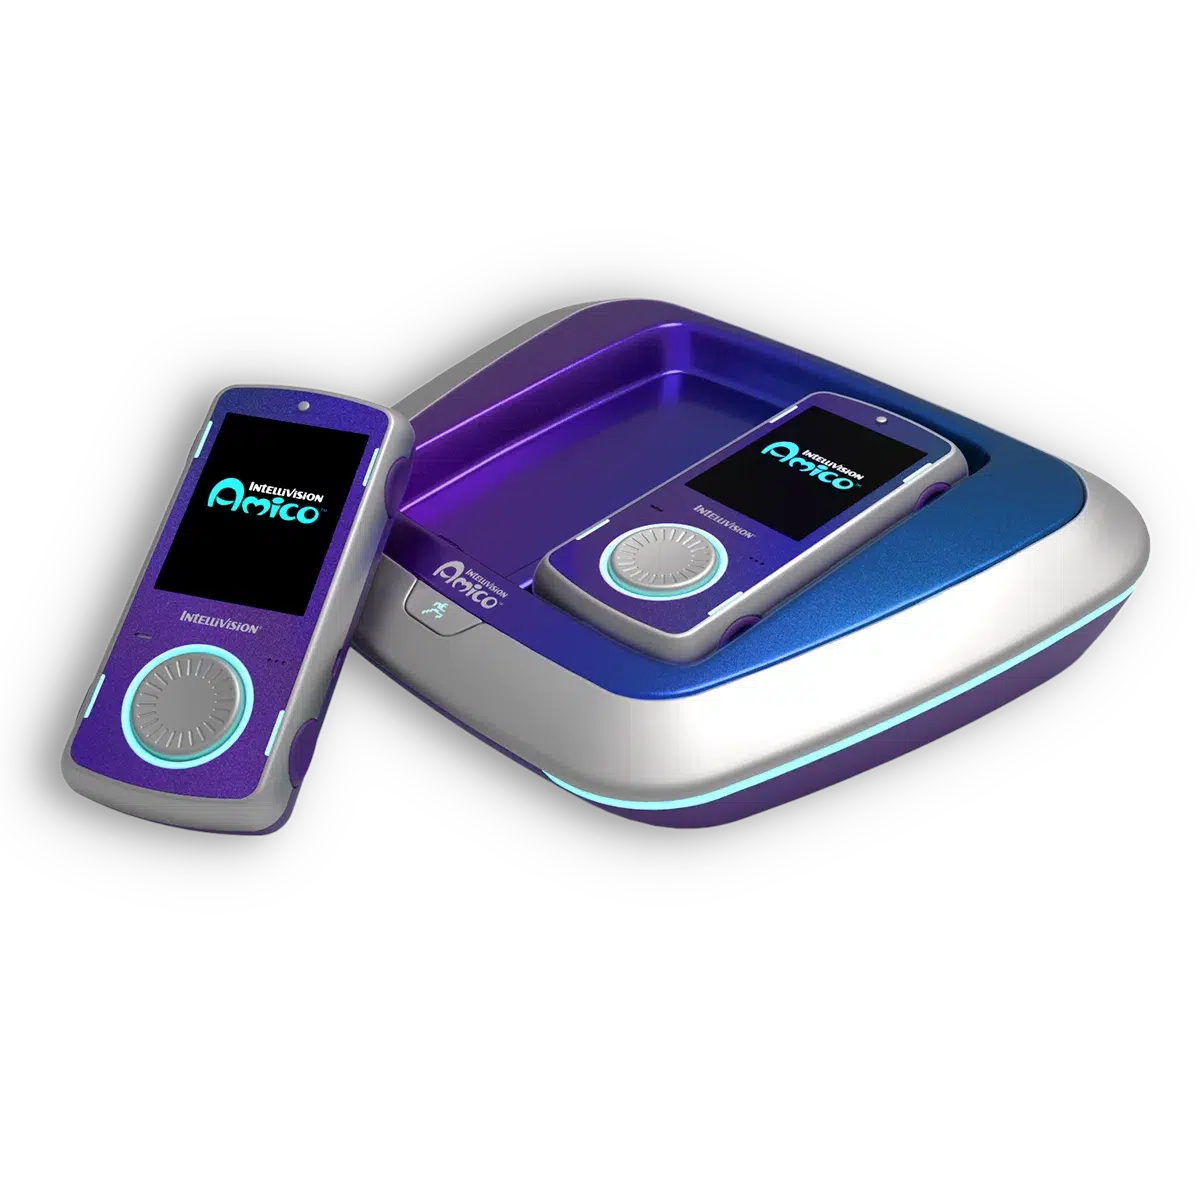 Intellivision Amico - Galaxy Purple